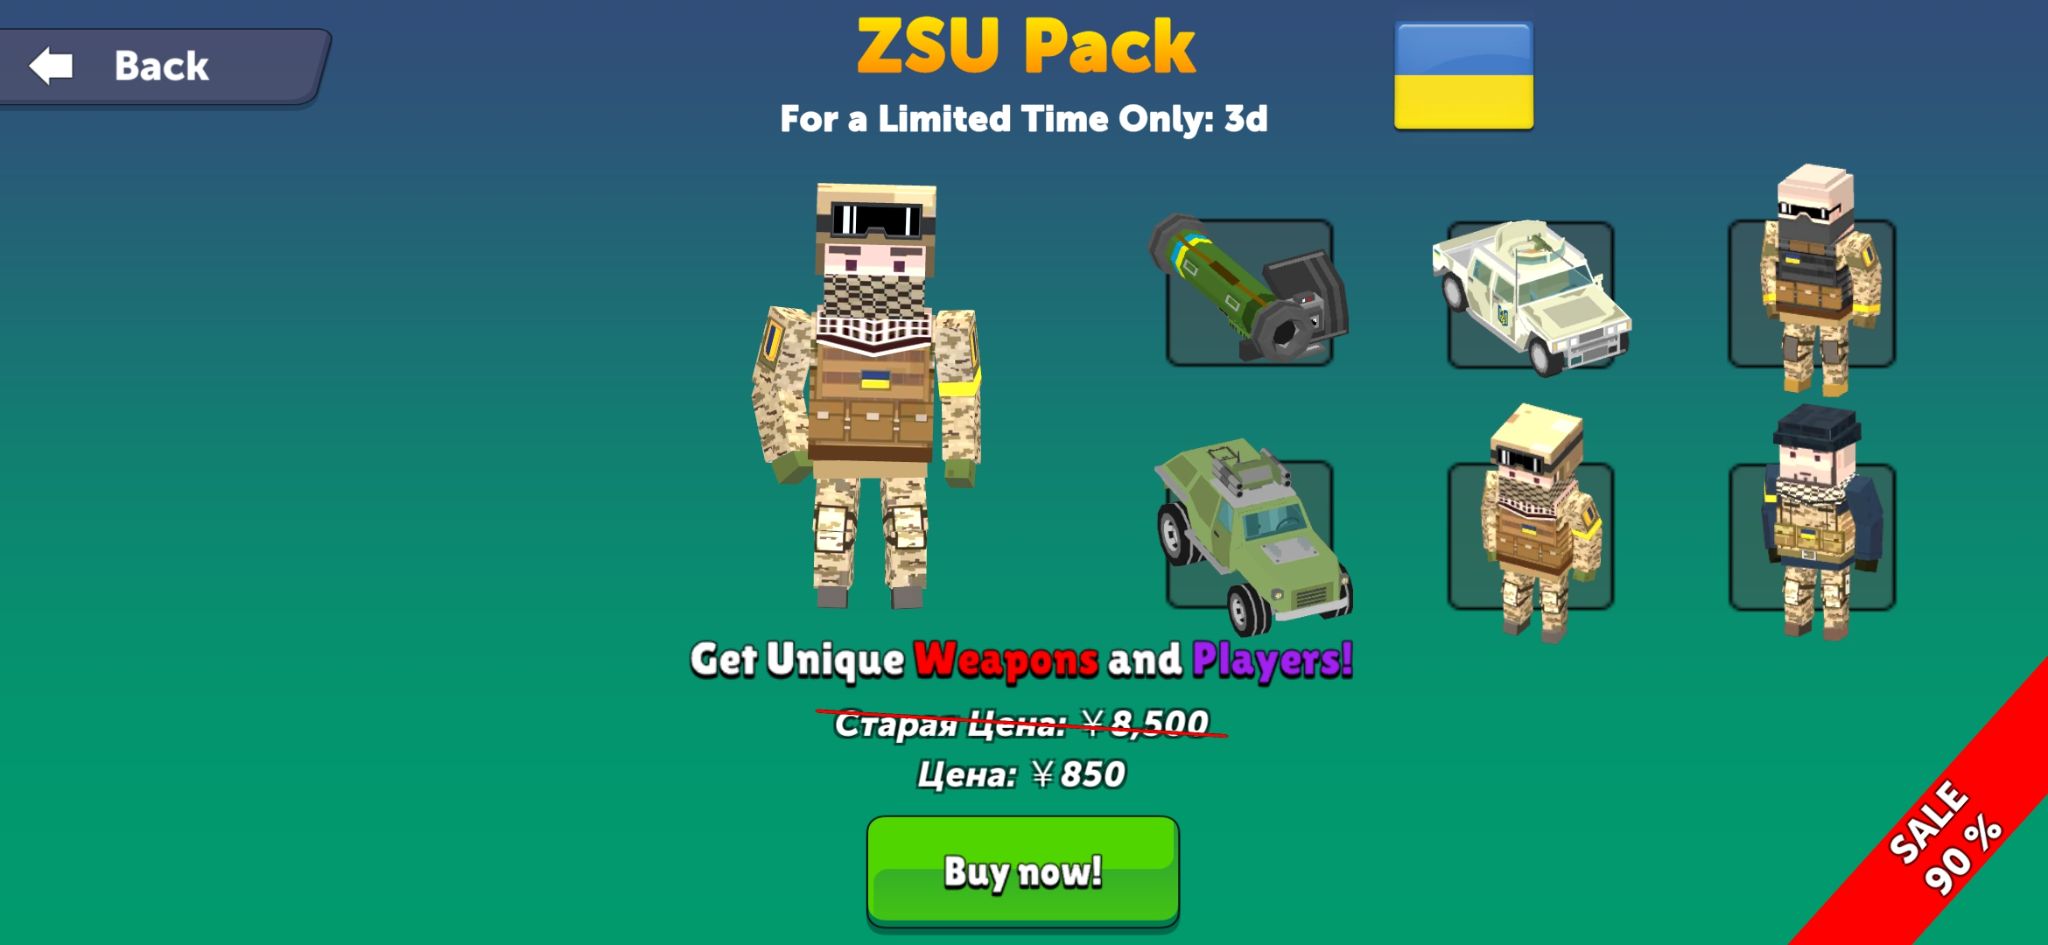 ZSU Pack.jpg